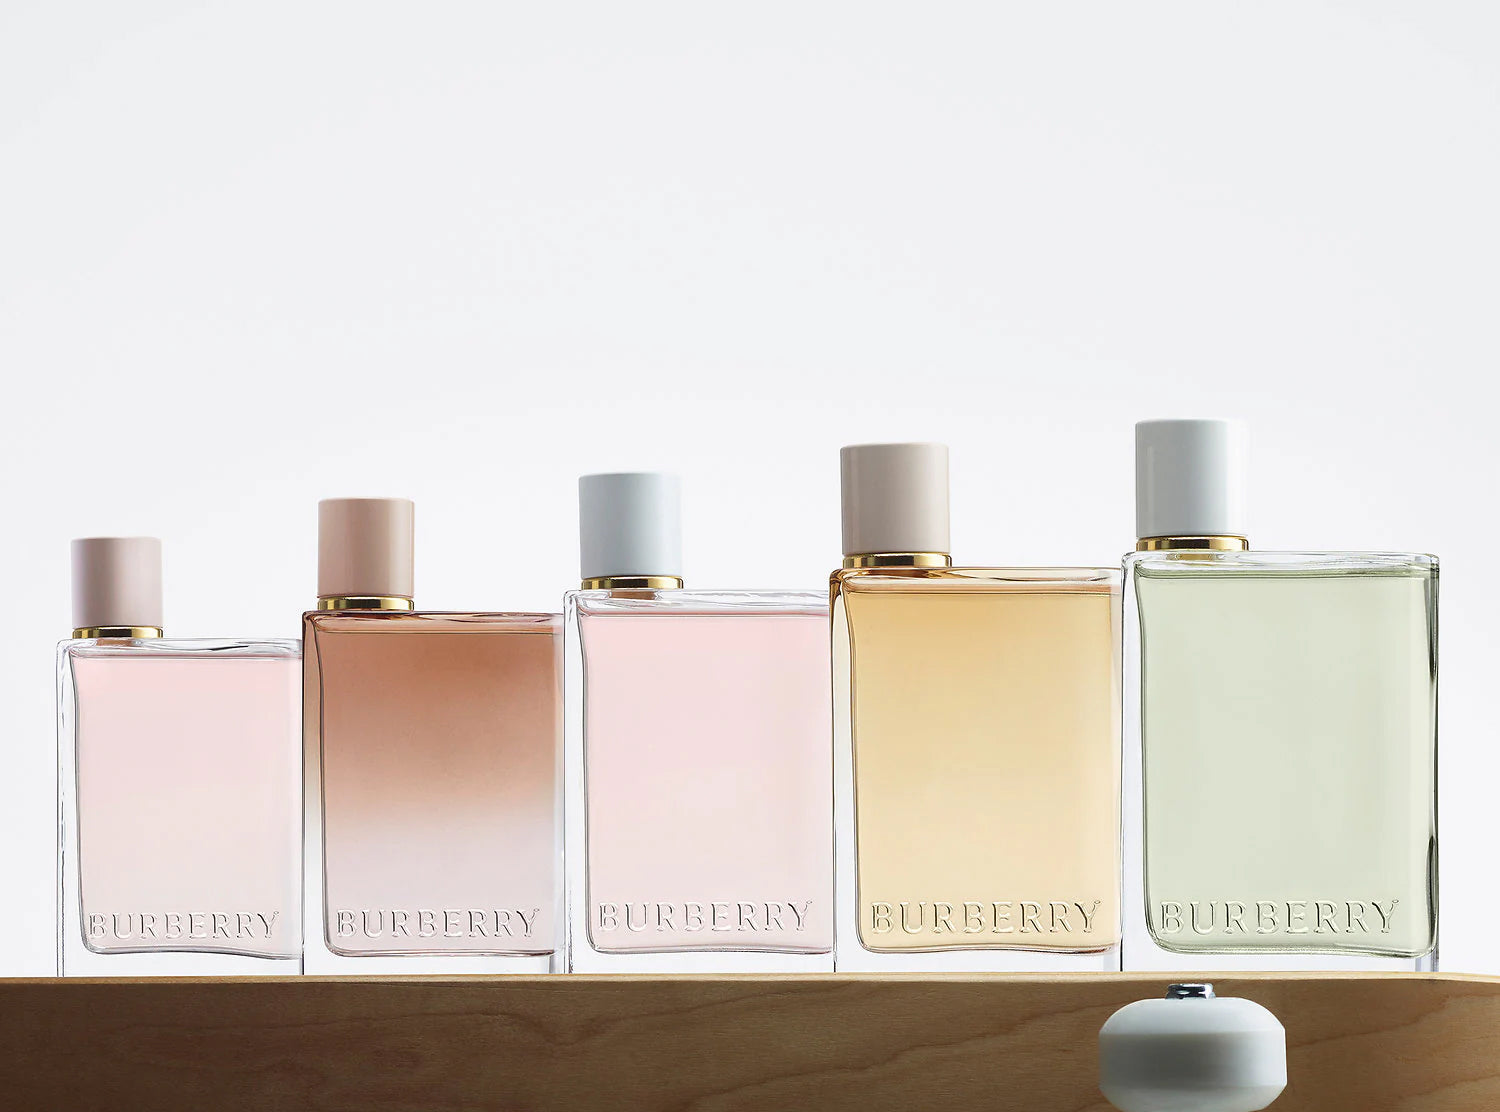 Burberry Fine Fragrances For Men & Women